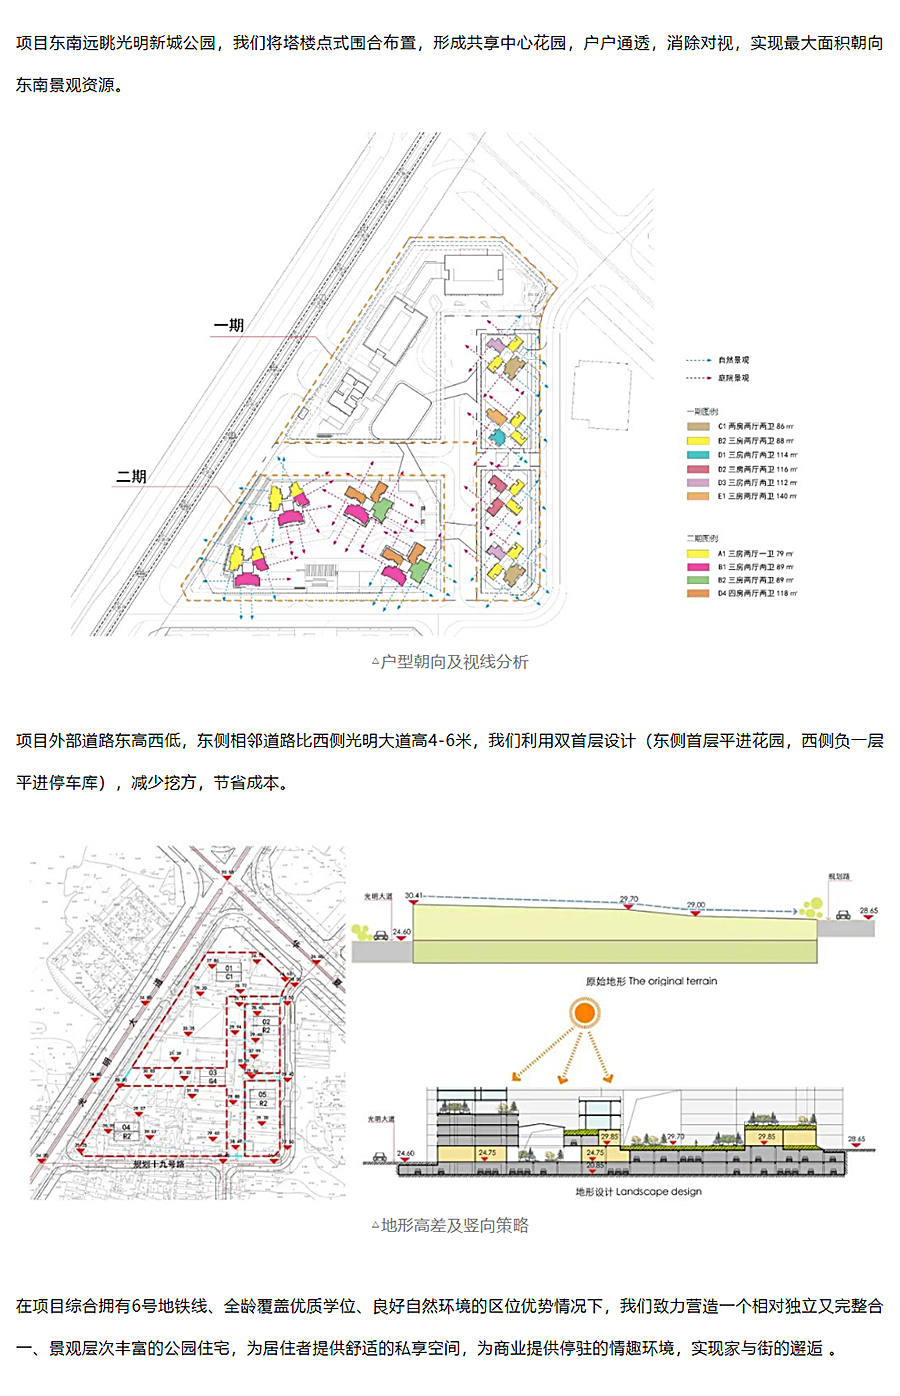 高密度下的生长型社区-_-宏发·万悦山_0006_图层-7.jpg